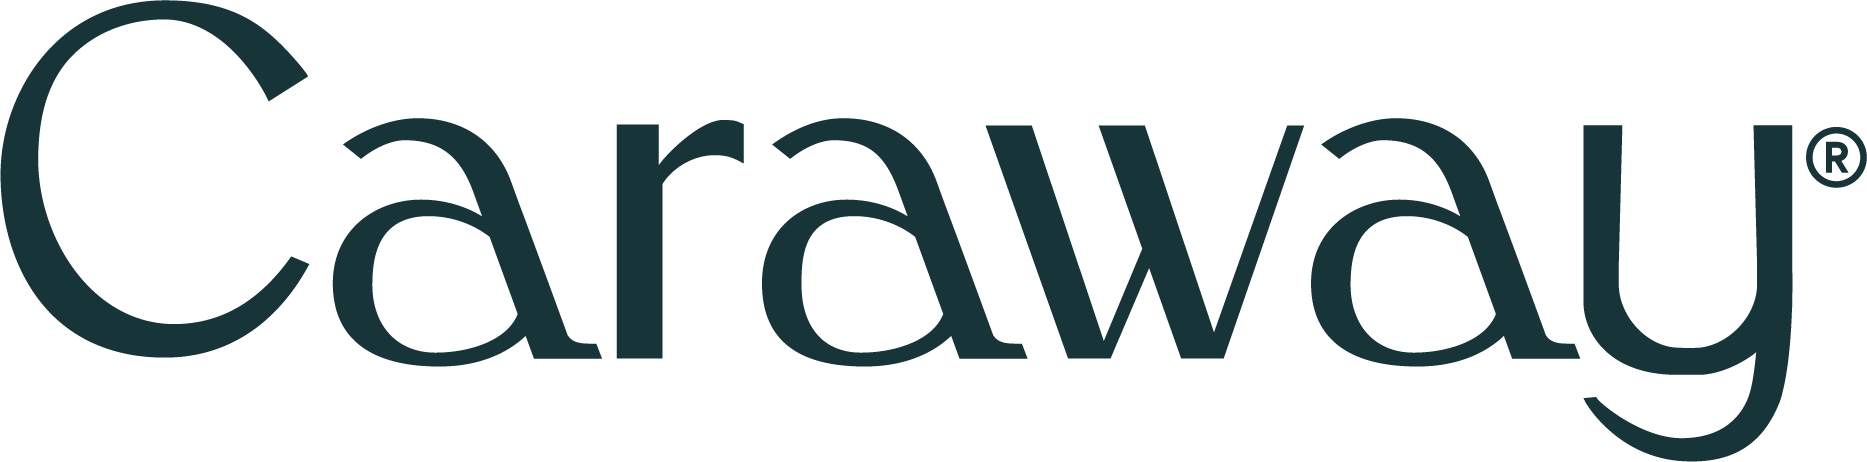 Caraway_Logo_Navy_011421